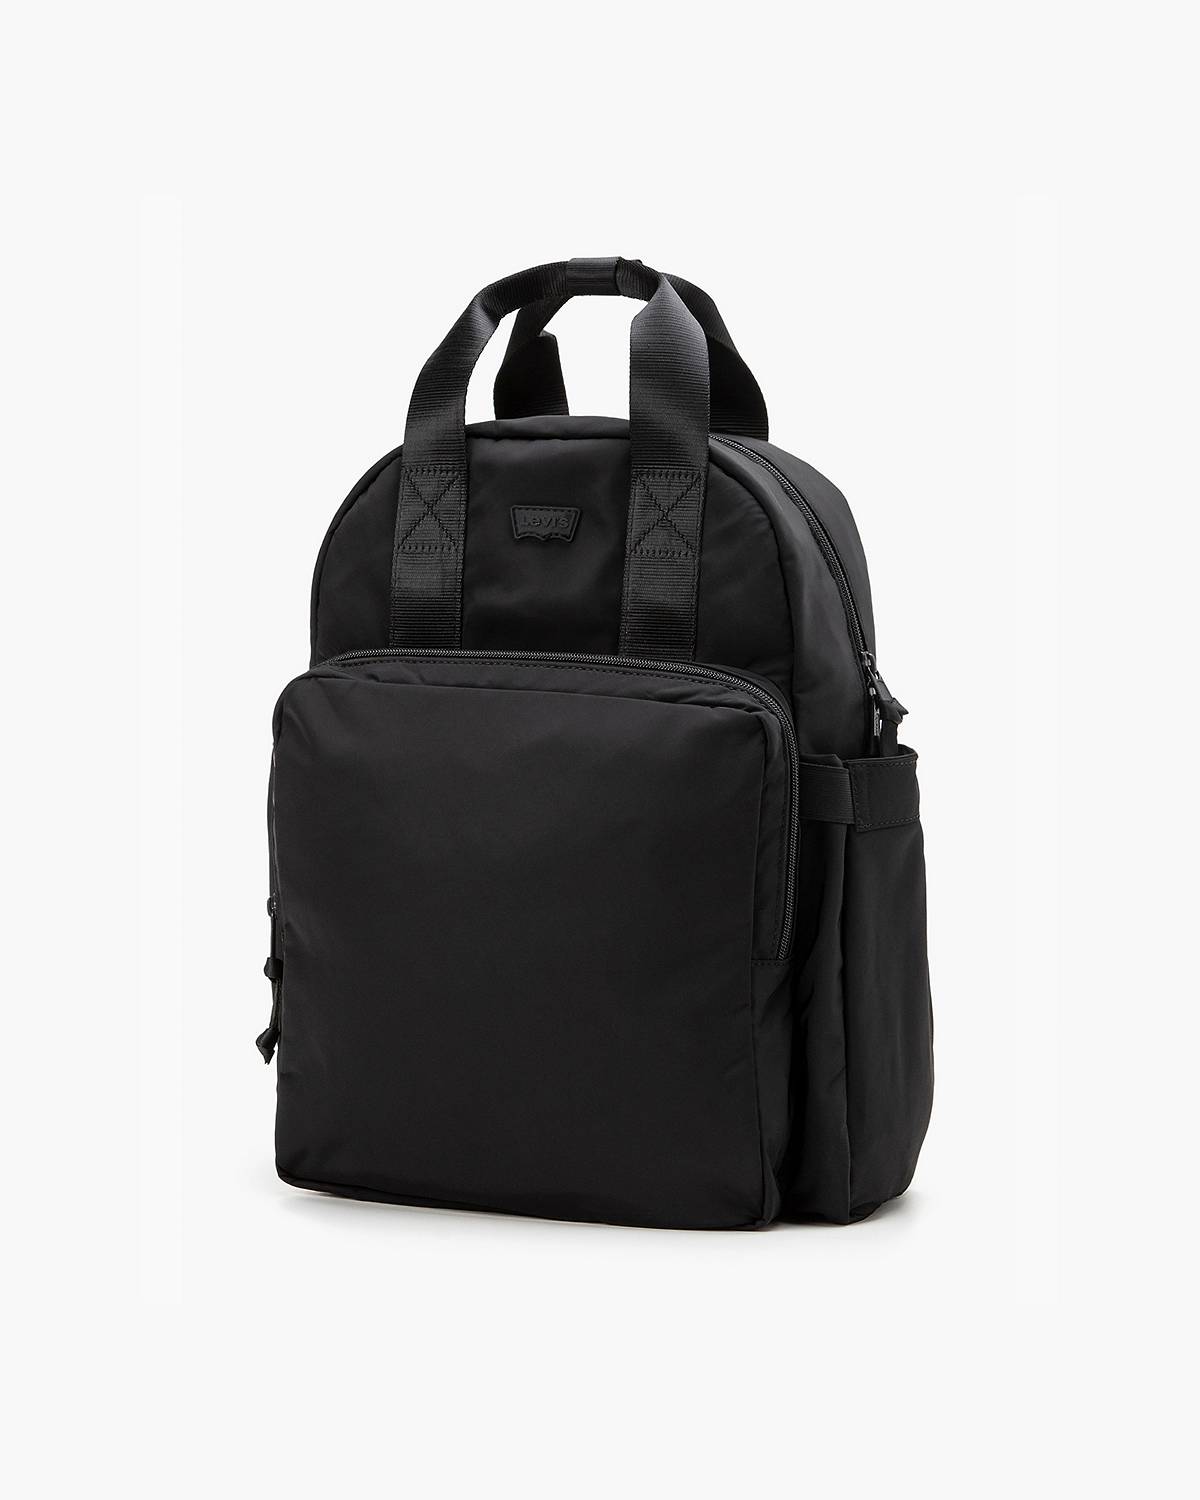 Black backpack.